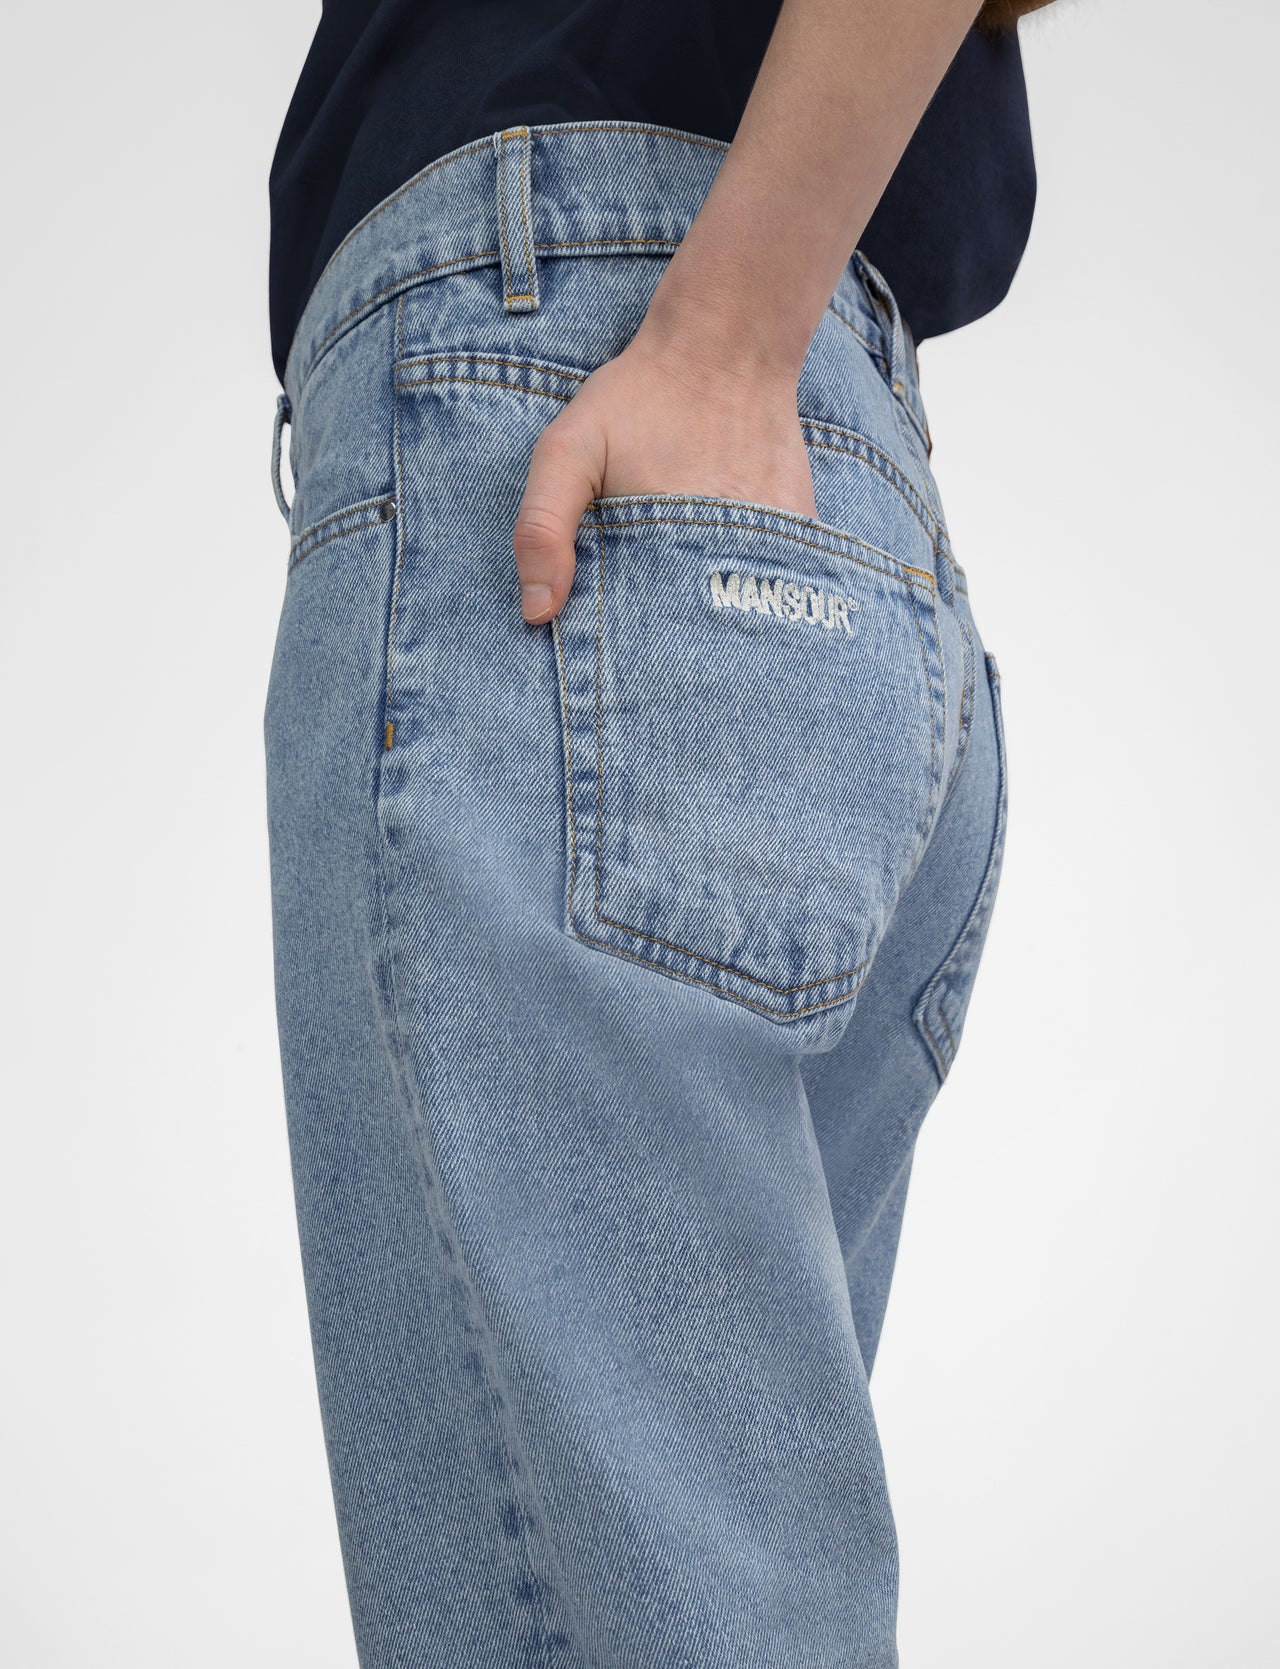 Jeans met rechte pasvorm lichtblauw